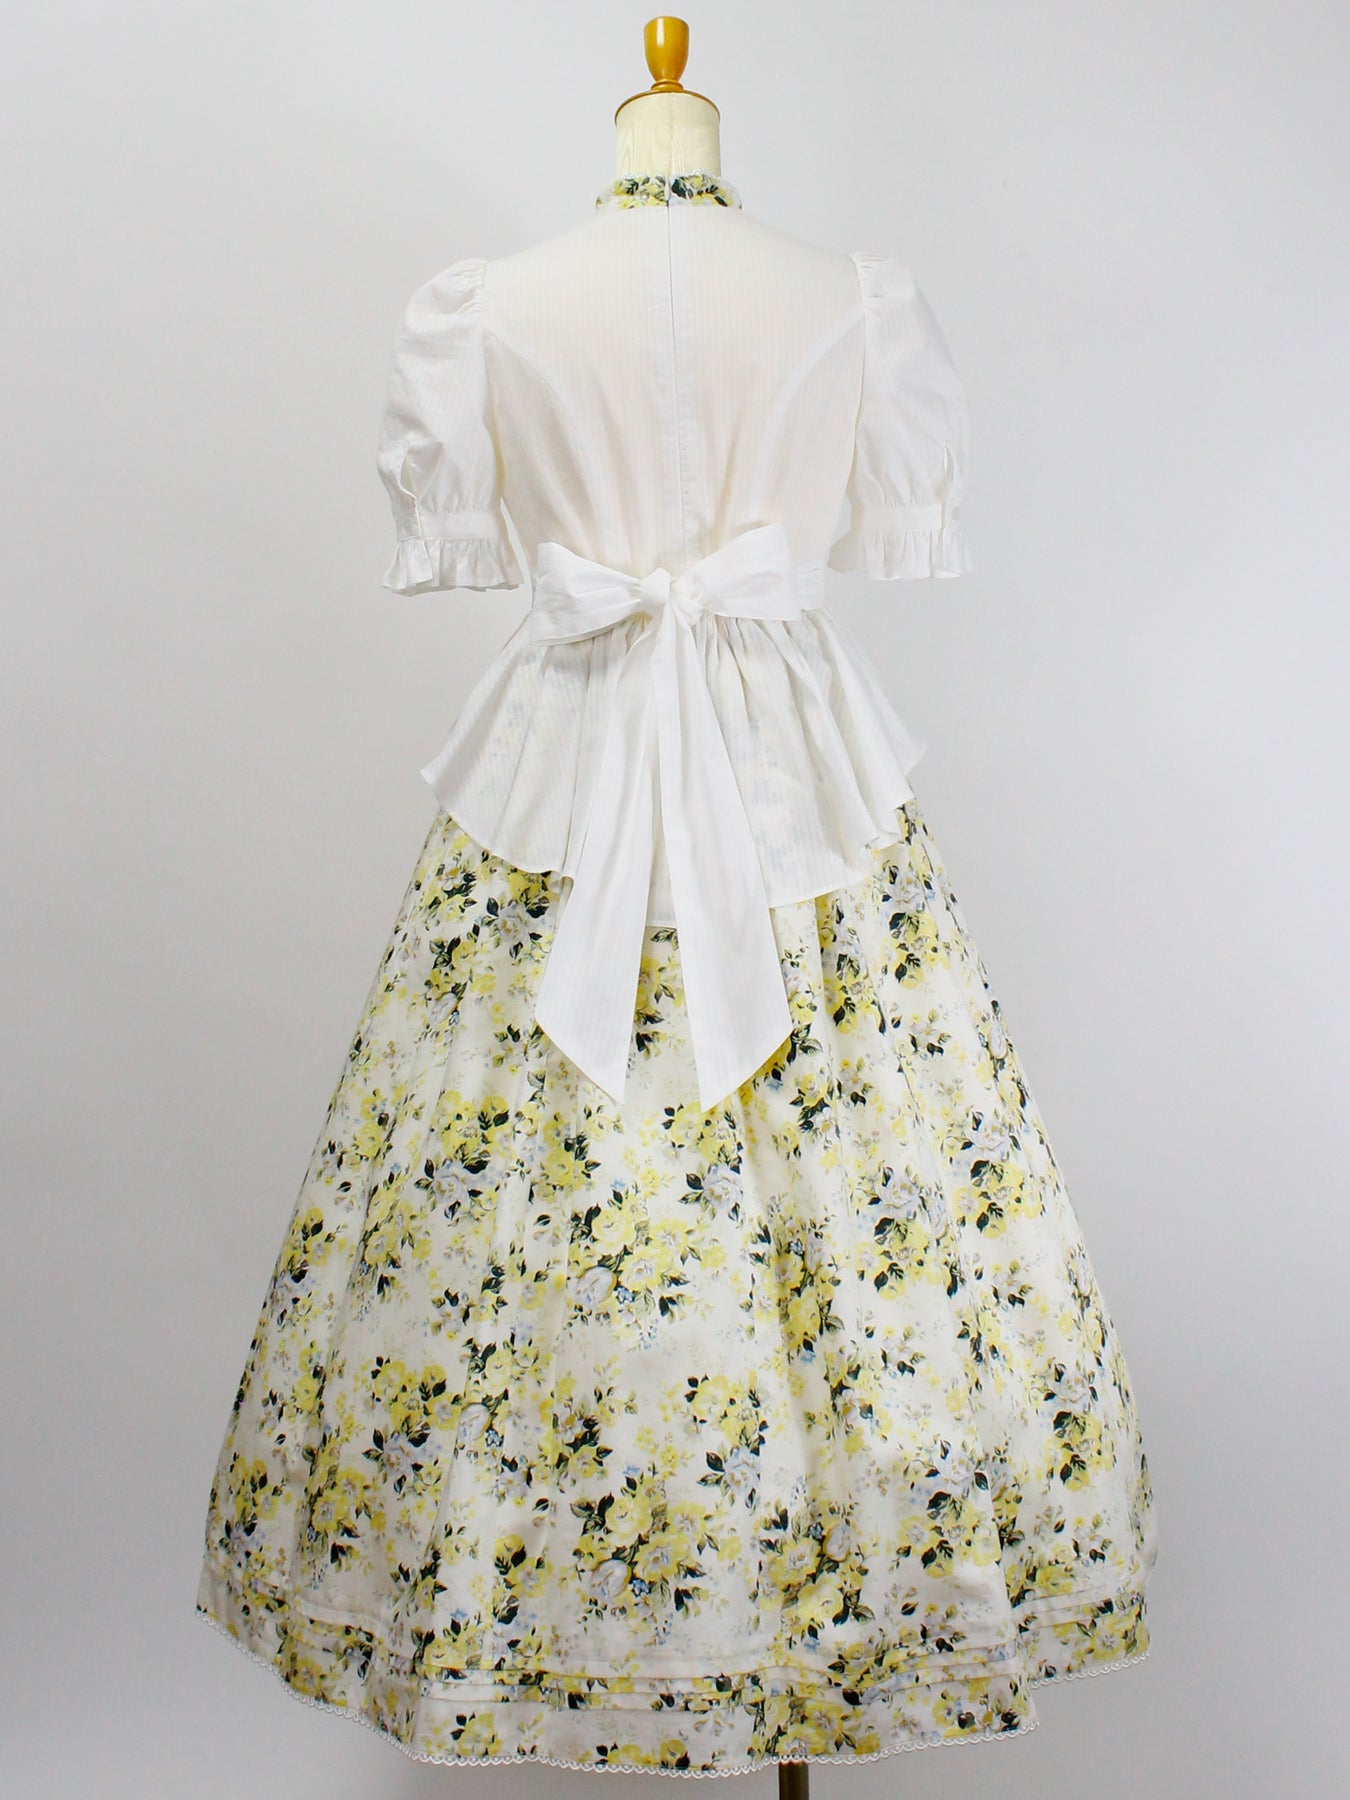 ロココブーケヴィクトリアンサマードレス - Victorian maiden